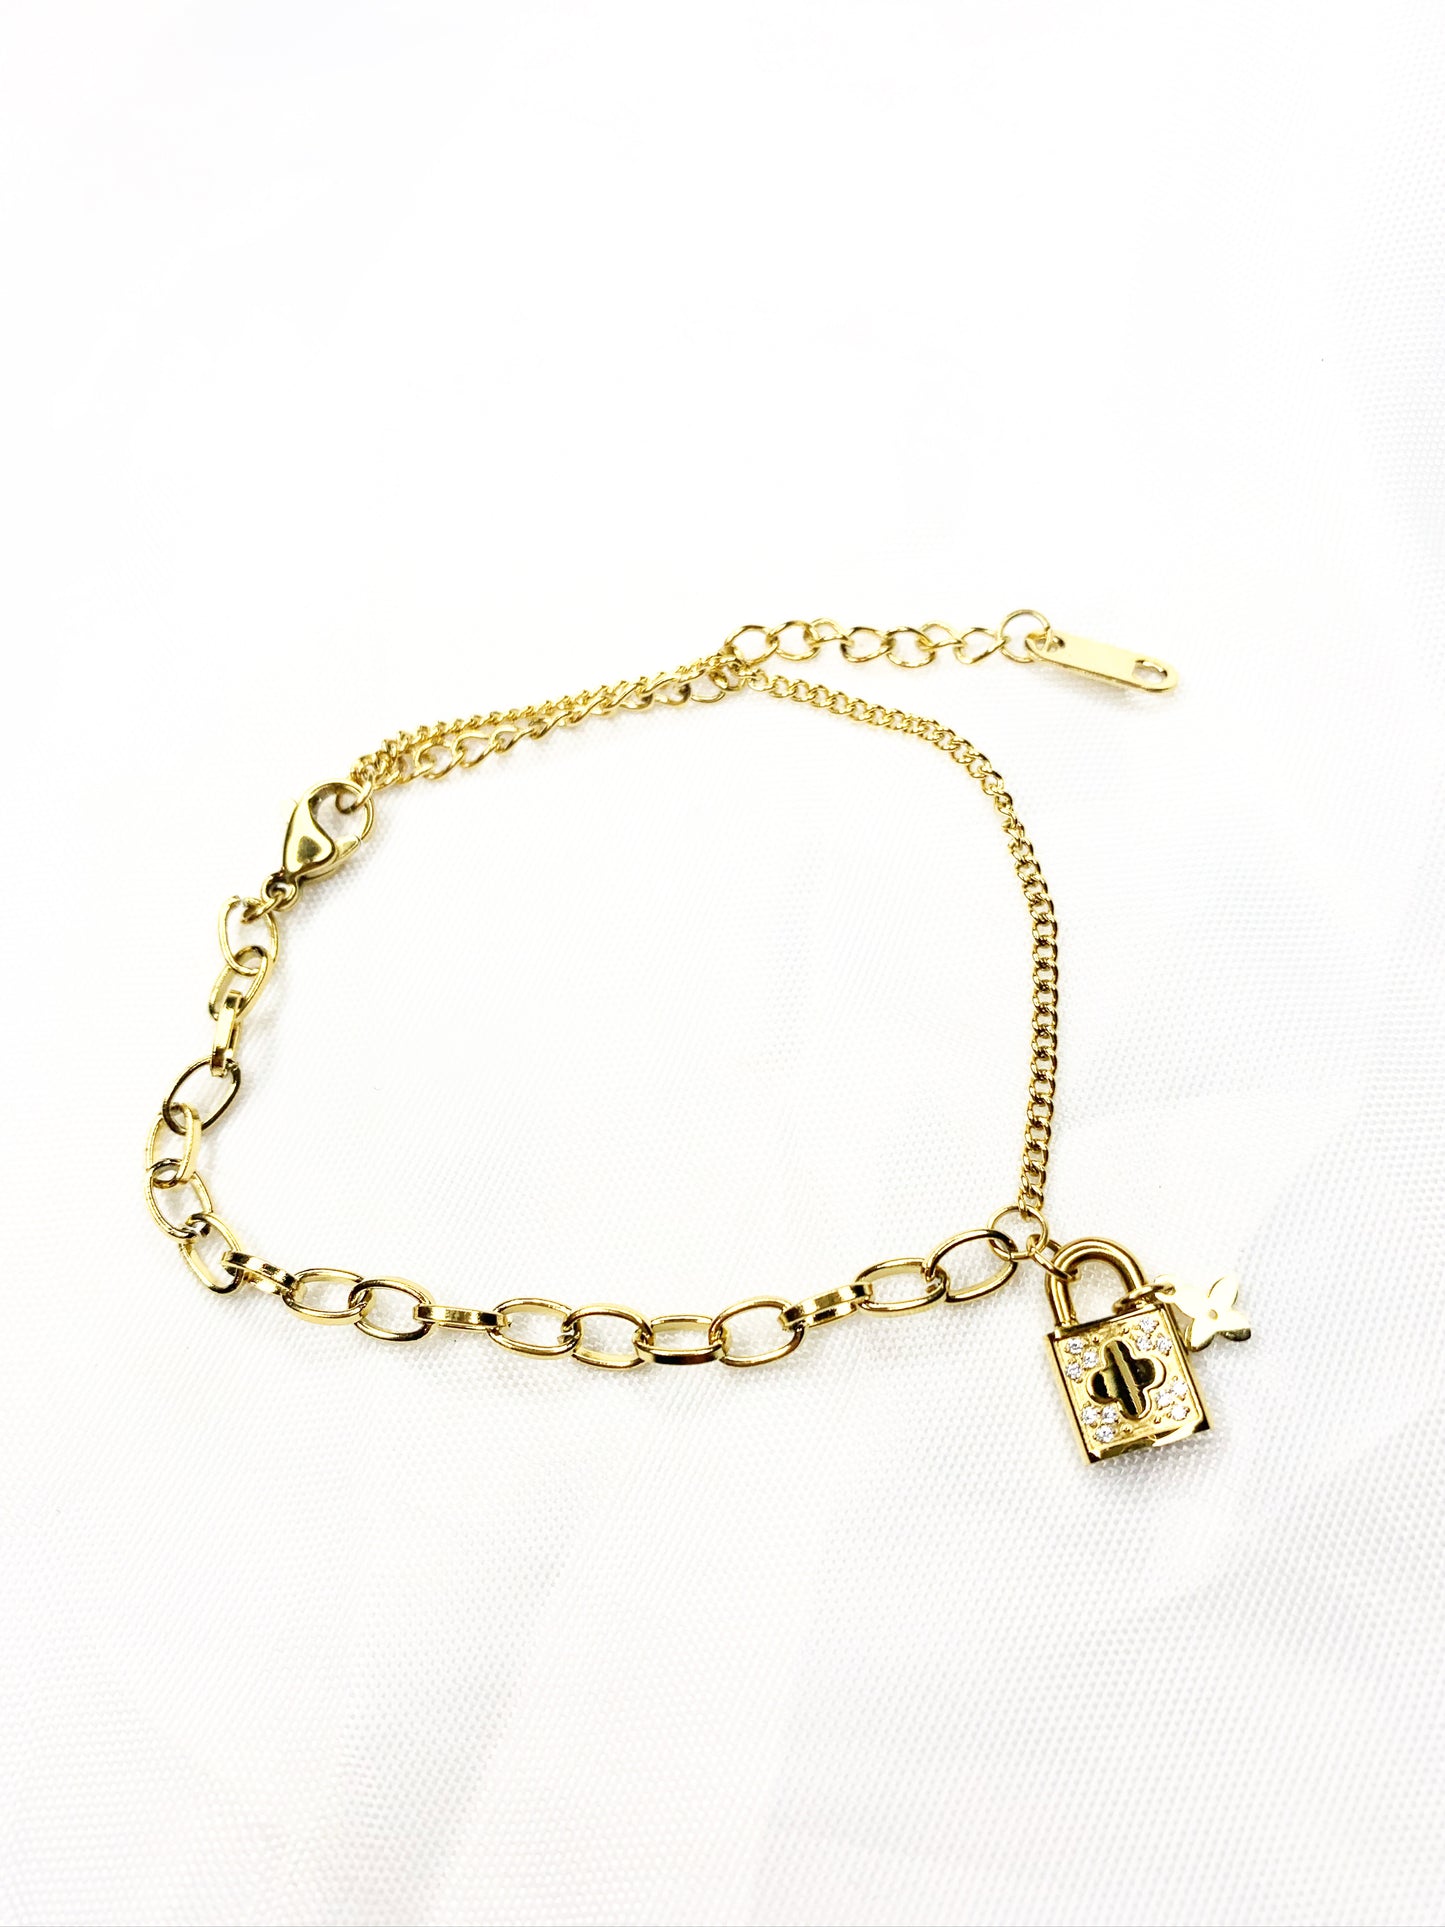 Gold Clover Lock Charm Bracelet